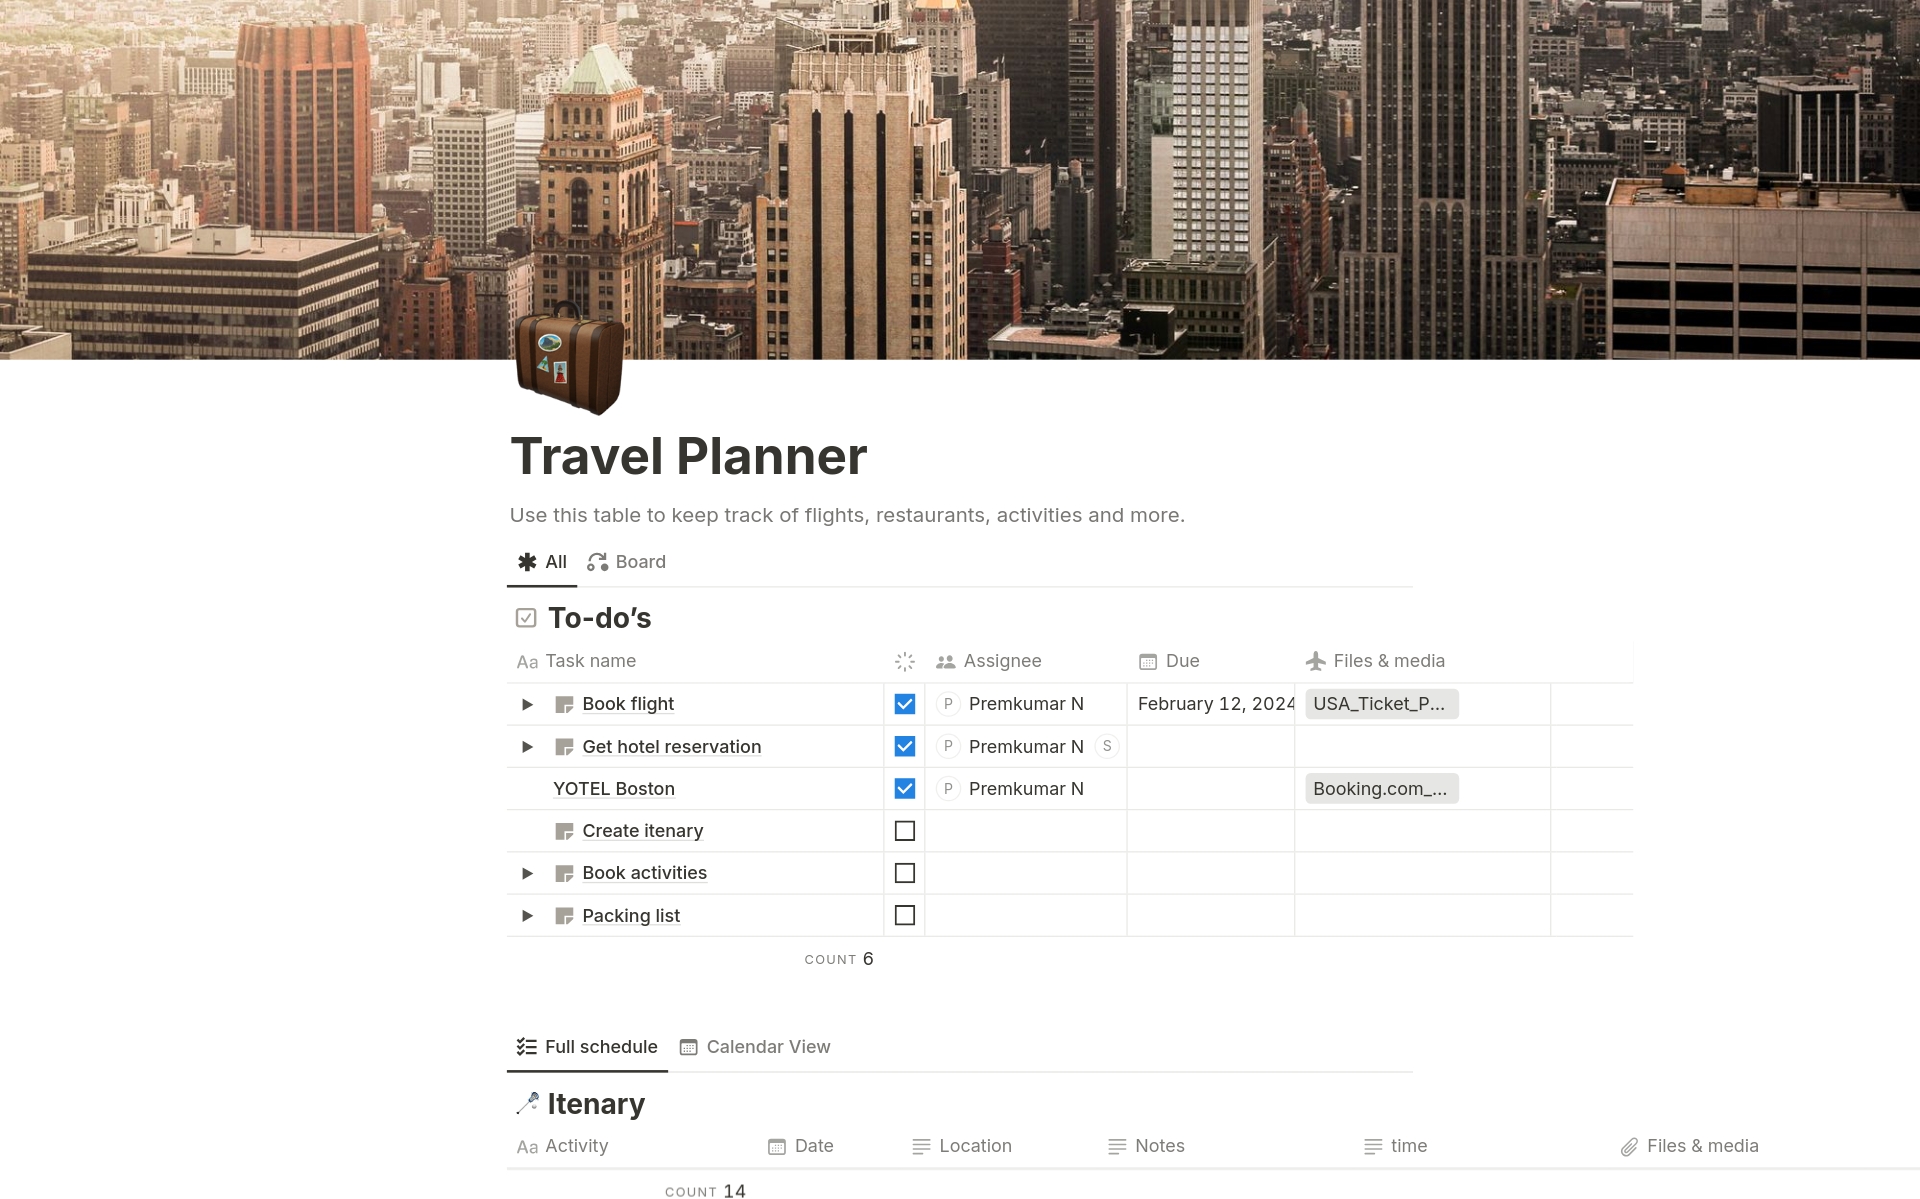 Vista previa de plantilla para Travel Planner - USA